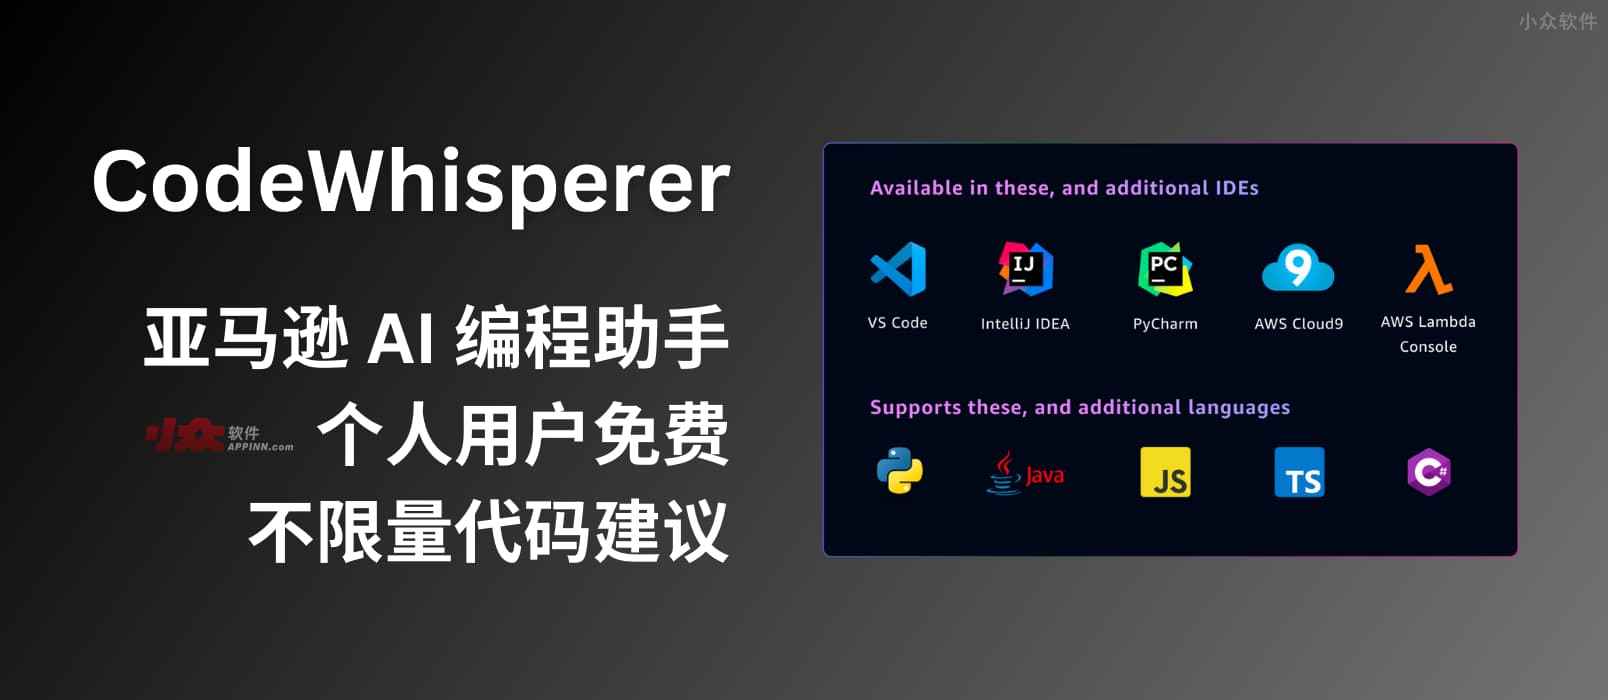 亚马逊 AI 编程助手 CodeWhisperer 免费对个人用户开放，提供不限量的代码建议，类似 GitHub Copilot